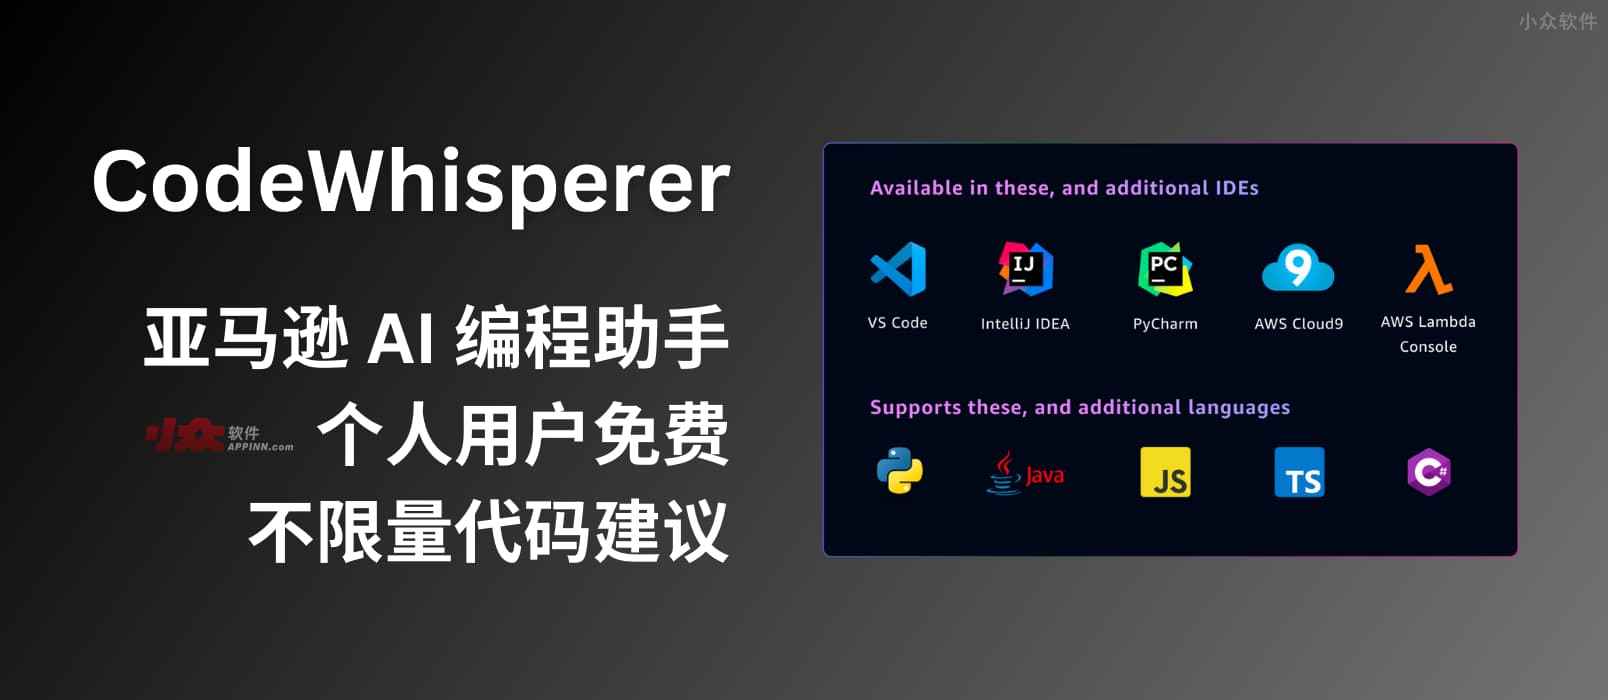 亚马逊 AI 编程助手 CodeWhisperer 免费对个人用户开放，提供不限量的代码建议，类似 GitHub Copilot